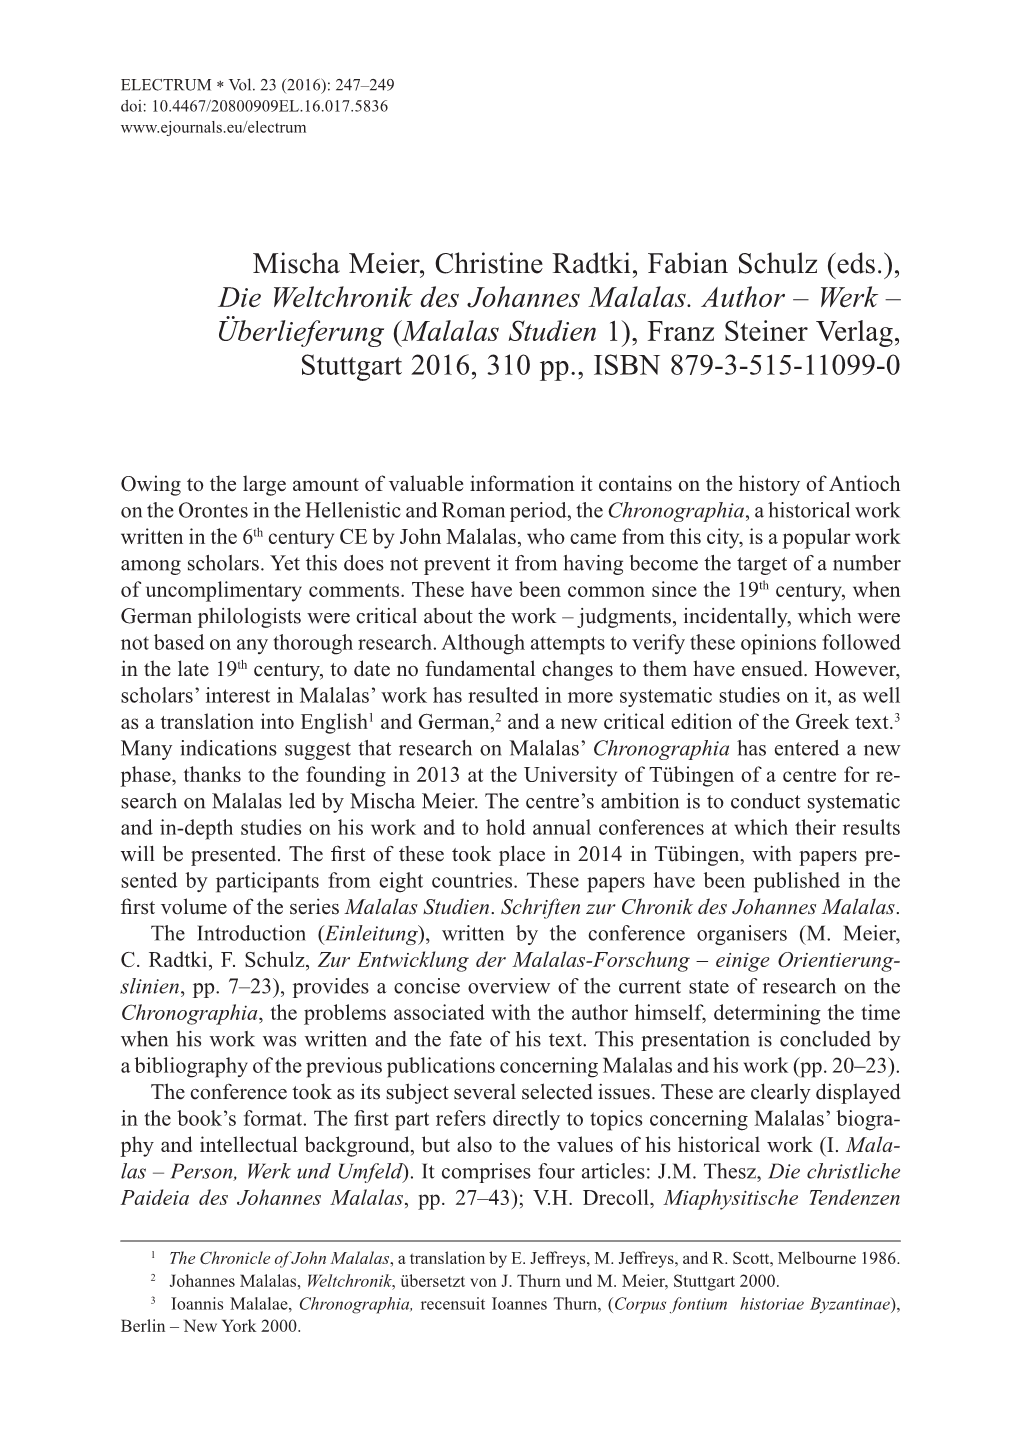 Mischa Meier, Christine Radtki, Fabian Schulz (Eds.), Die Weltchronik Des Johannes Malalas